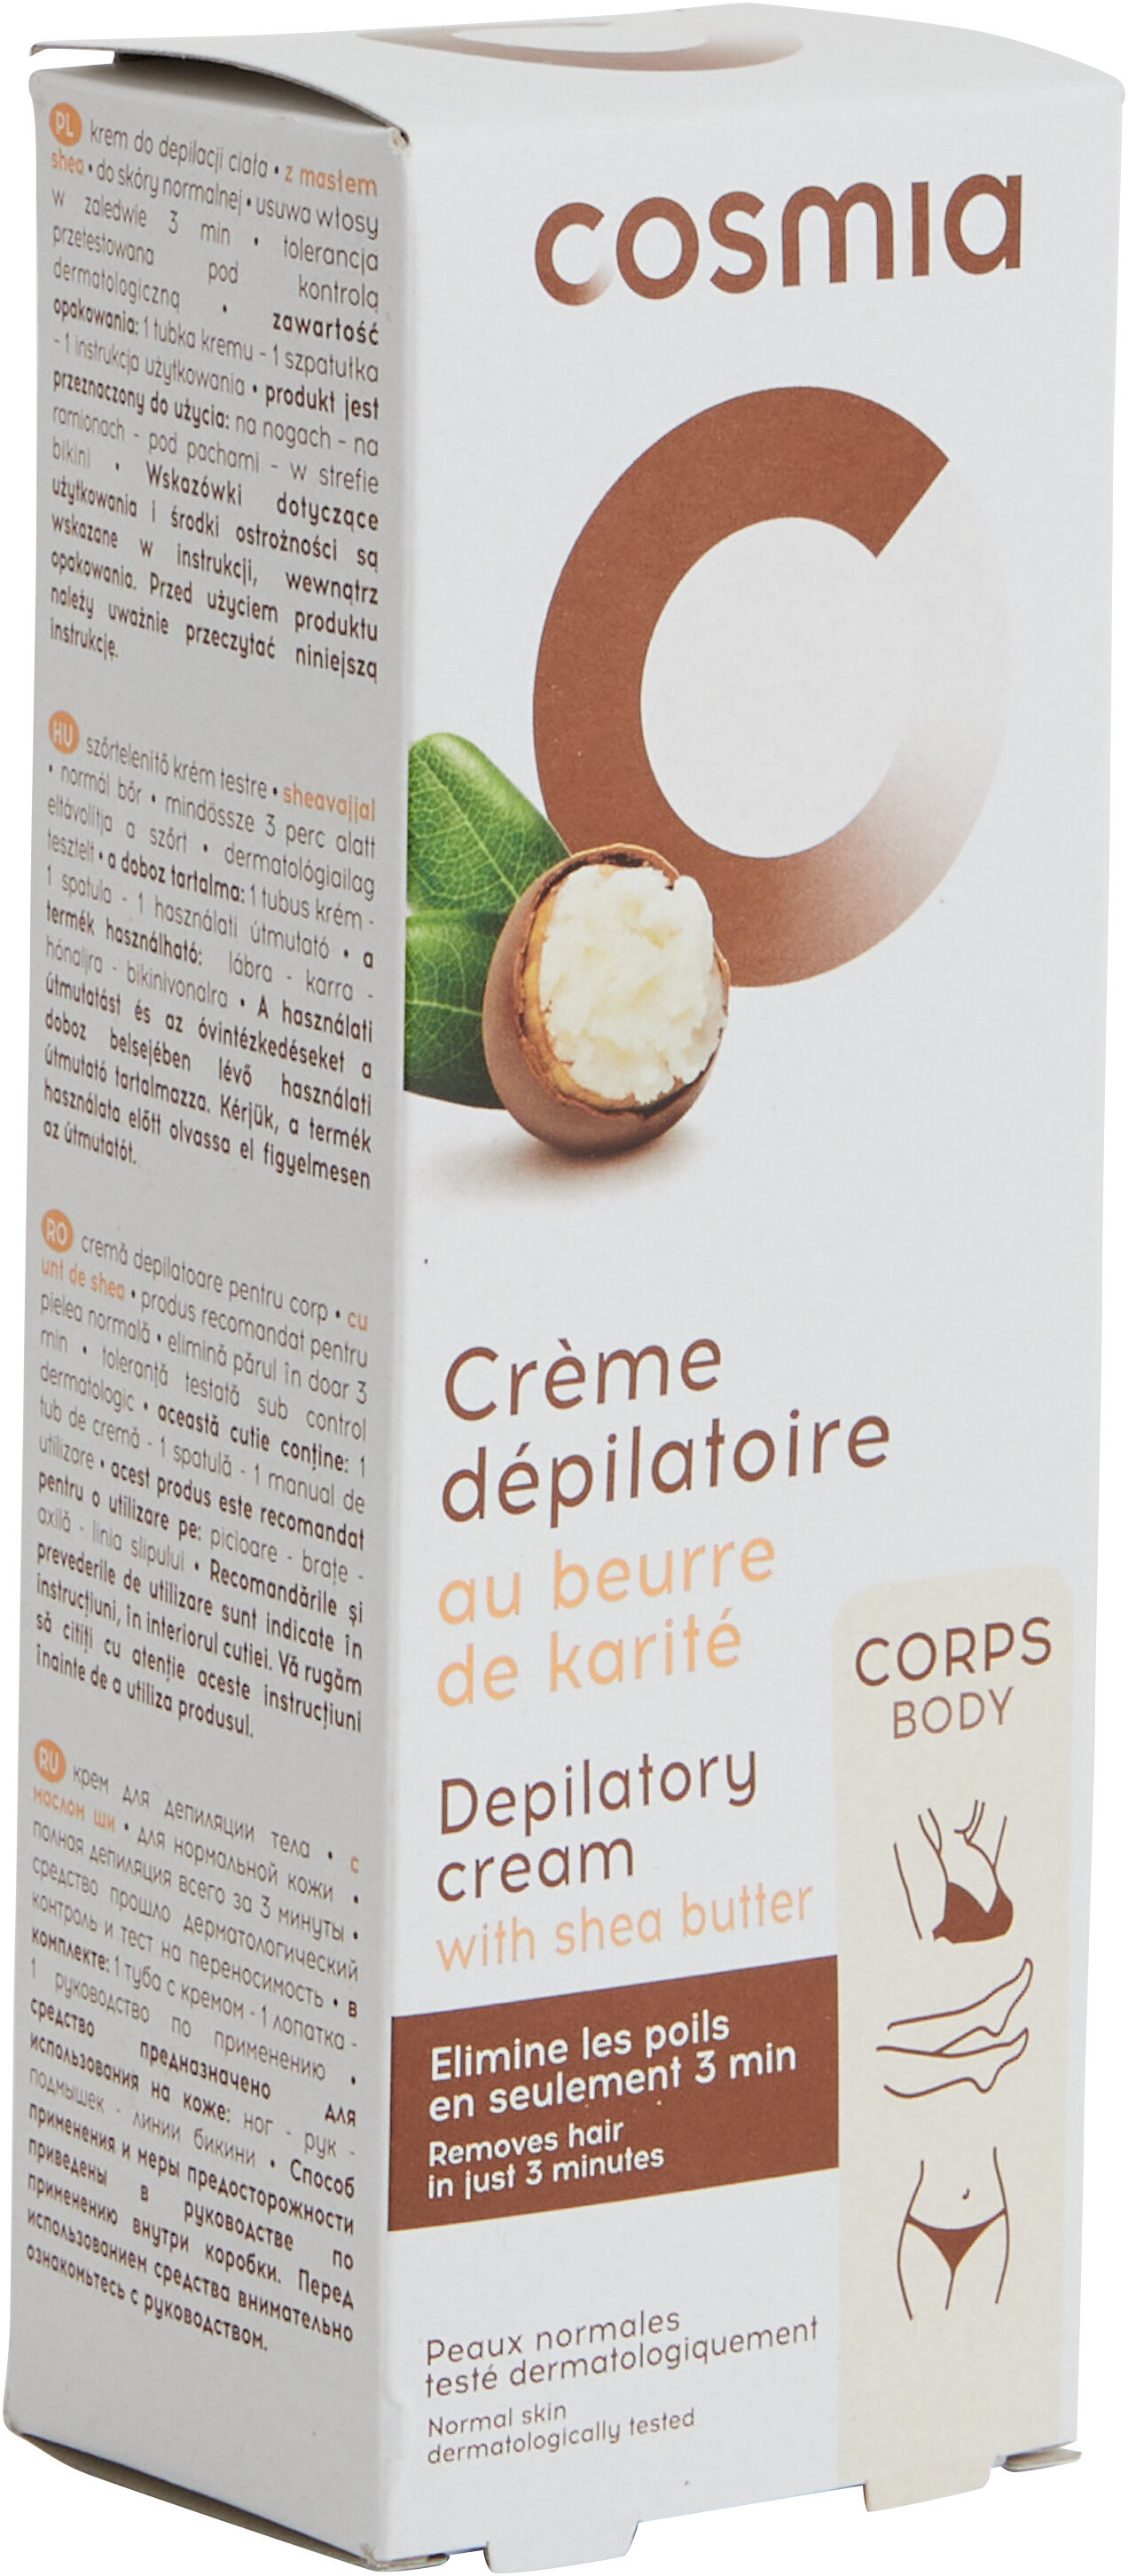 Crème dépilatoire au beurre de karité - उत्पाद - fr